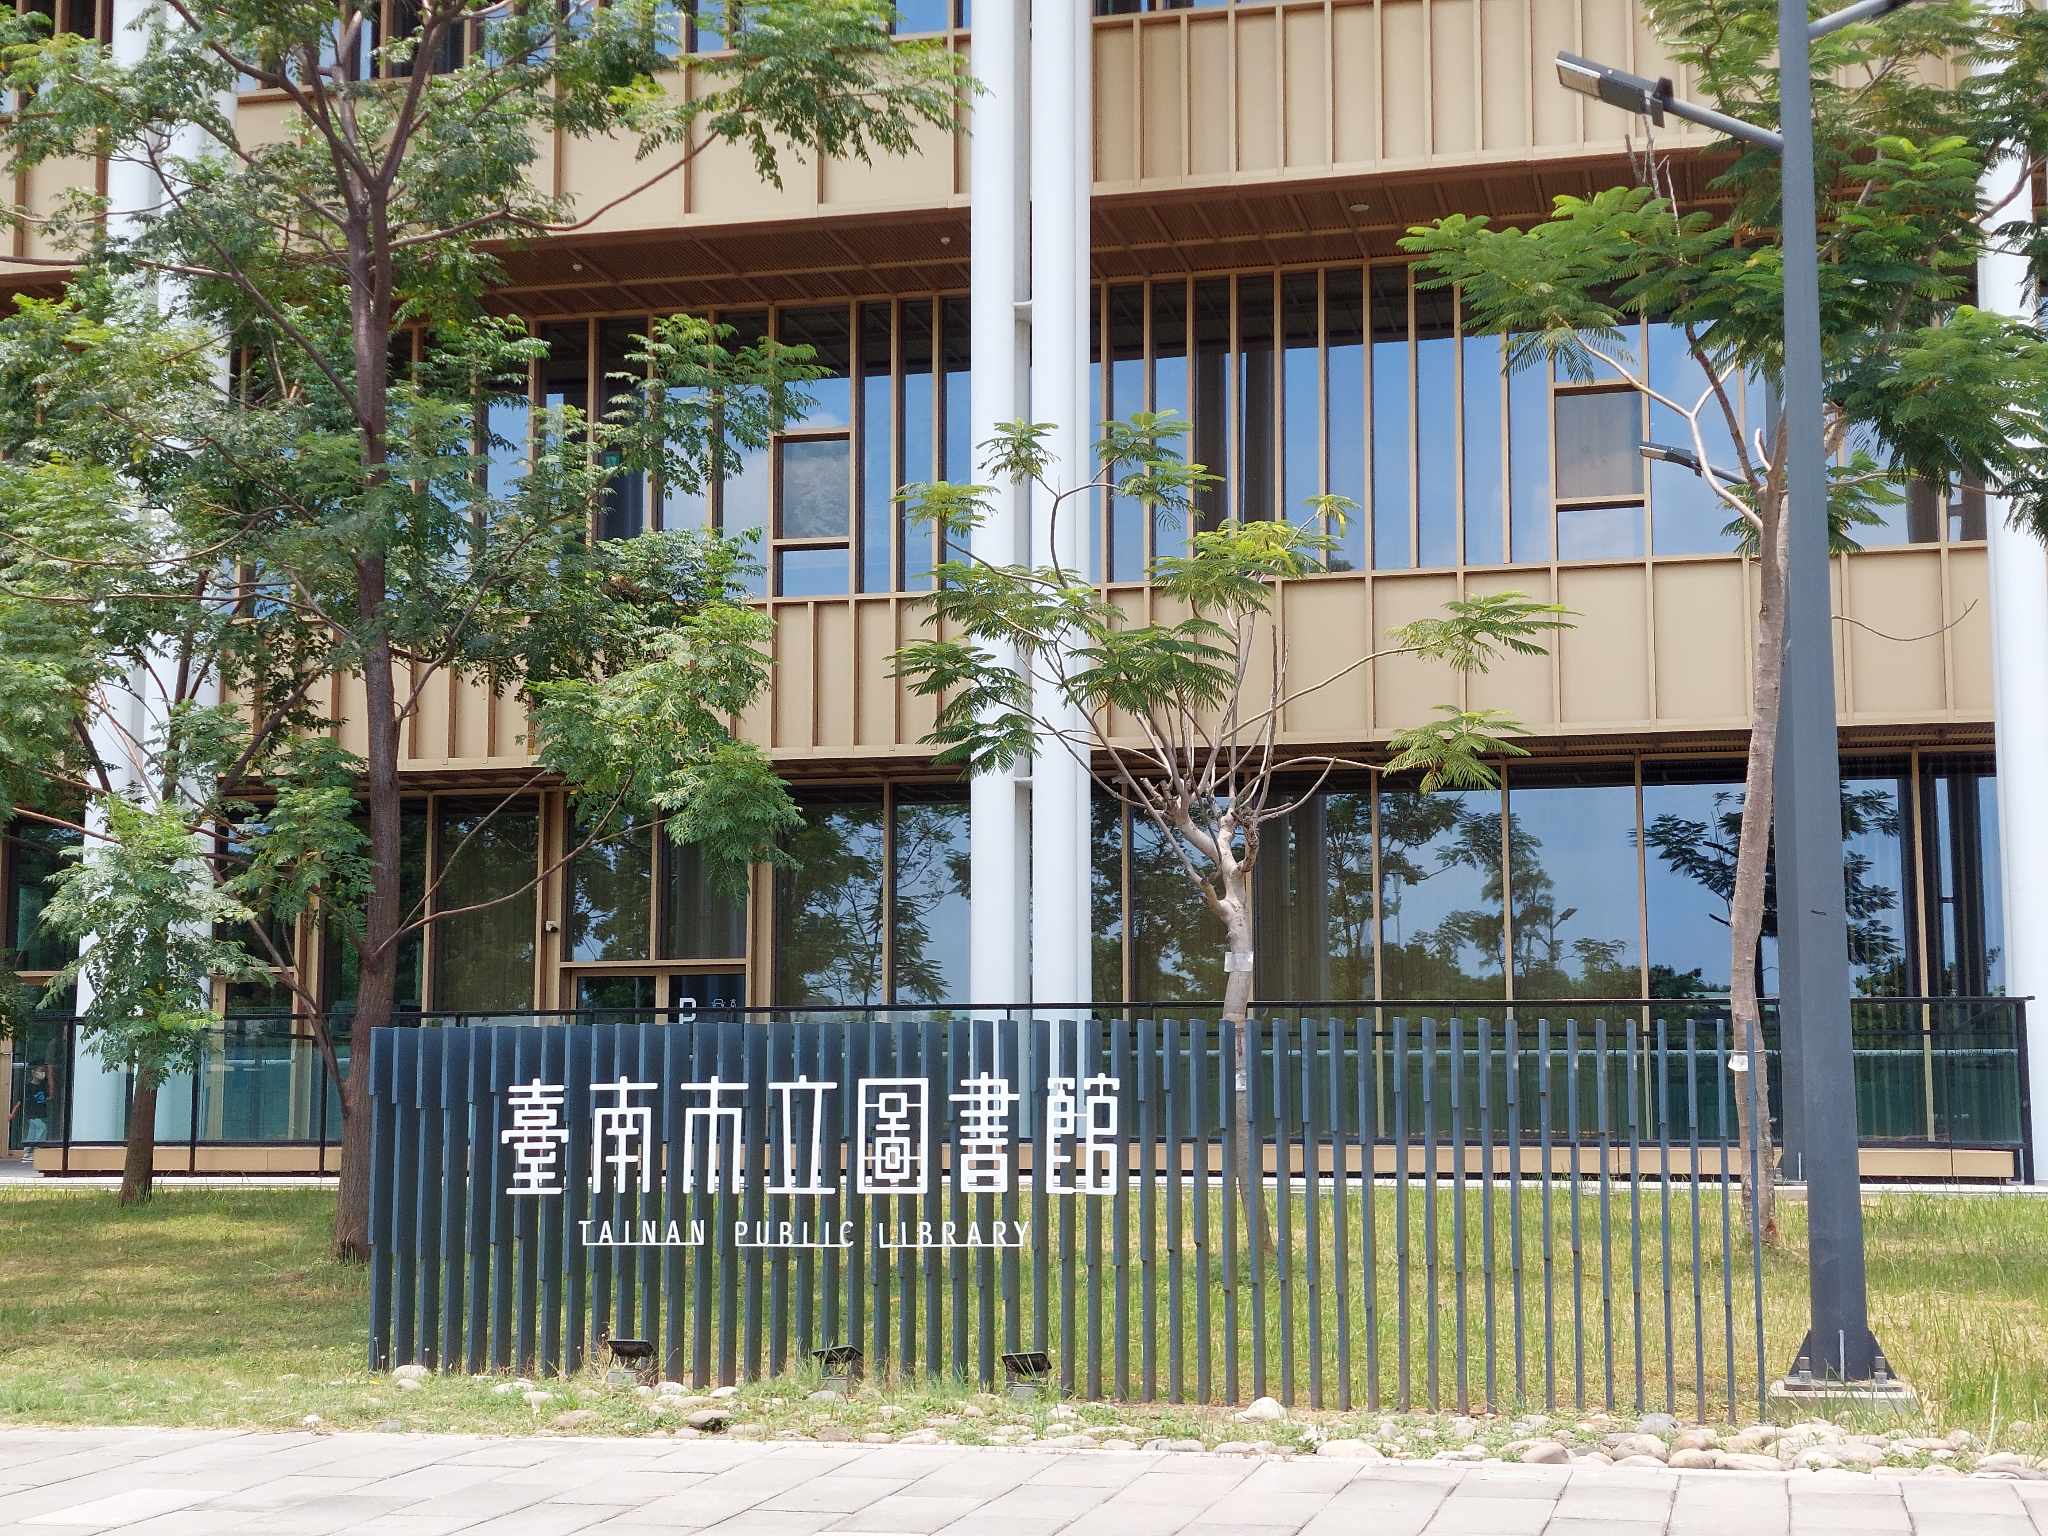 台南市立圖書館